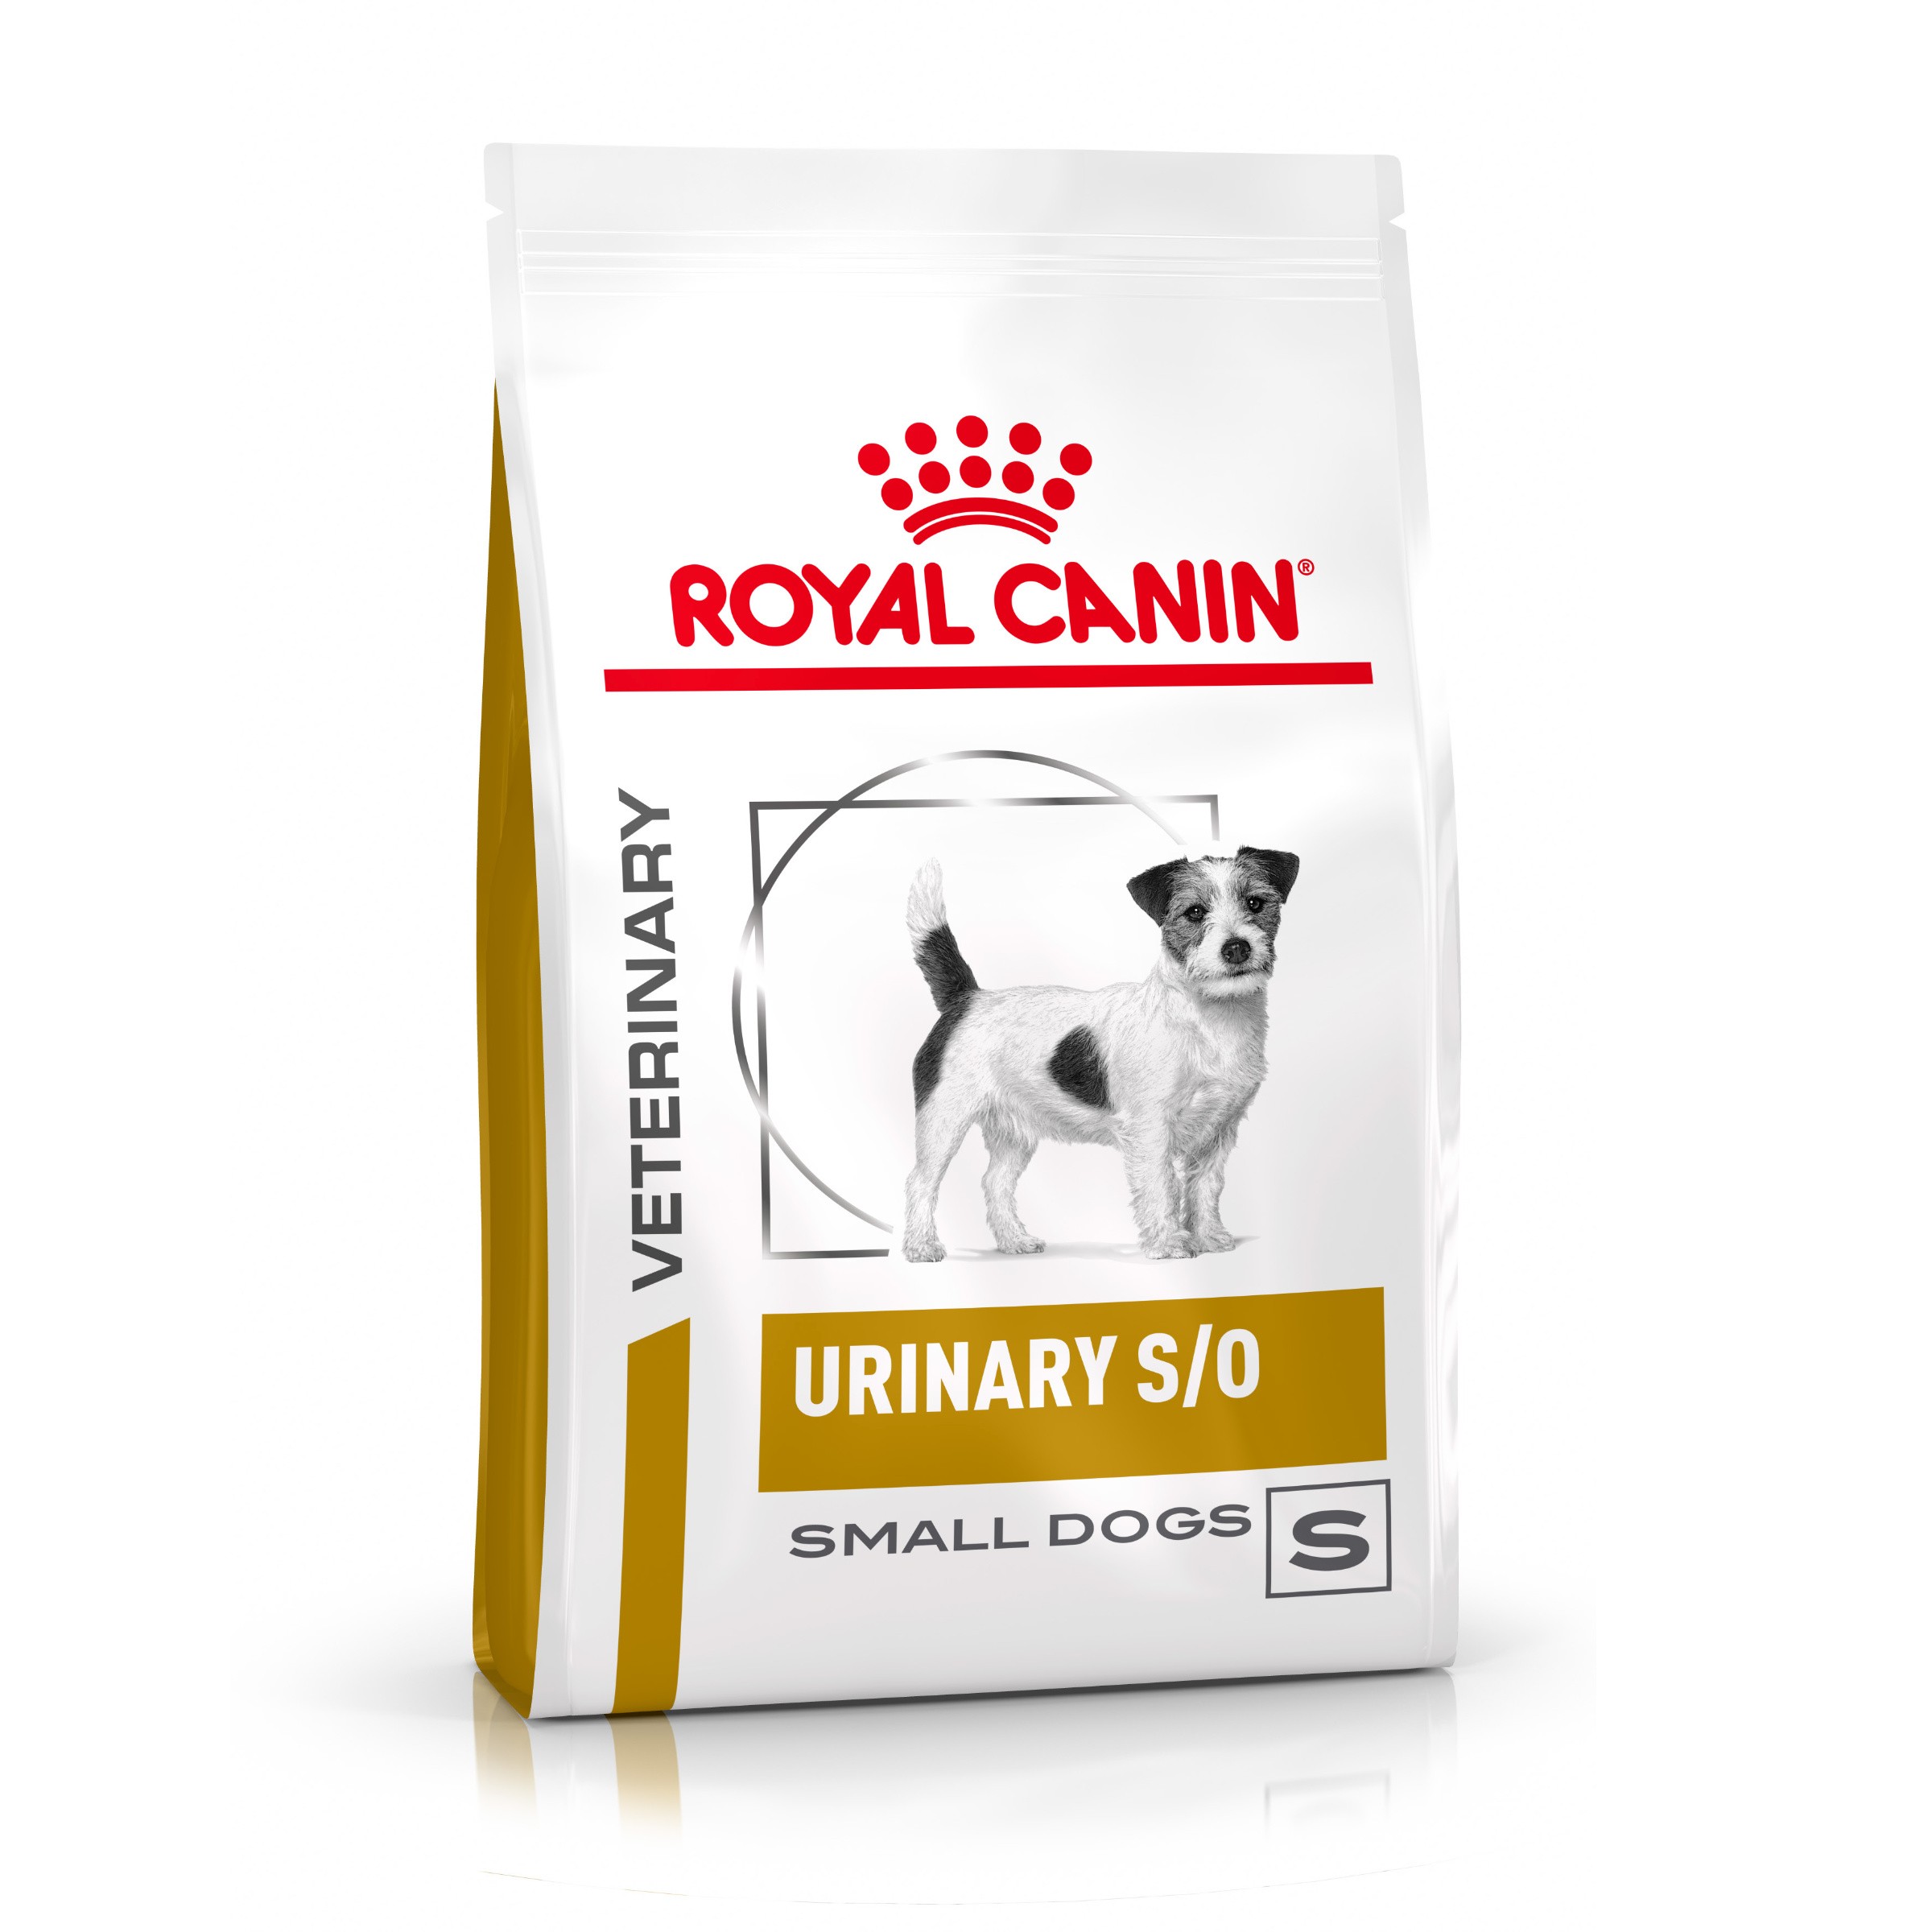 Royal Canin Veterinary Urinary S/O Small Dogs hondenvoer